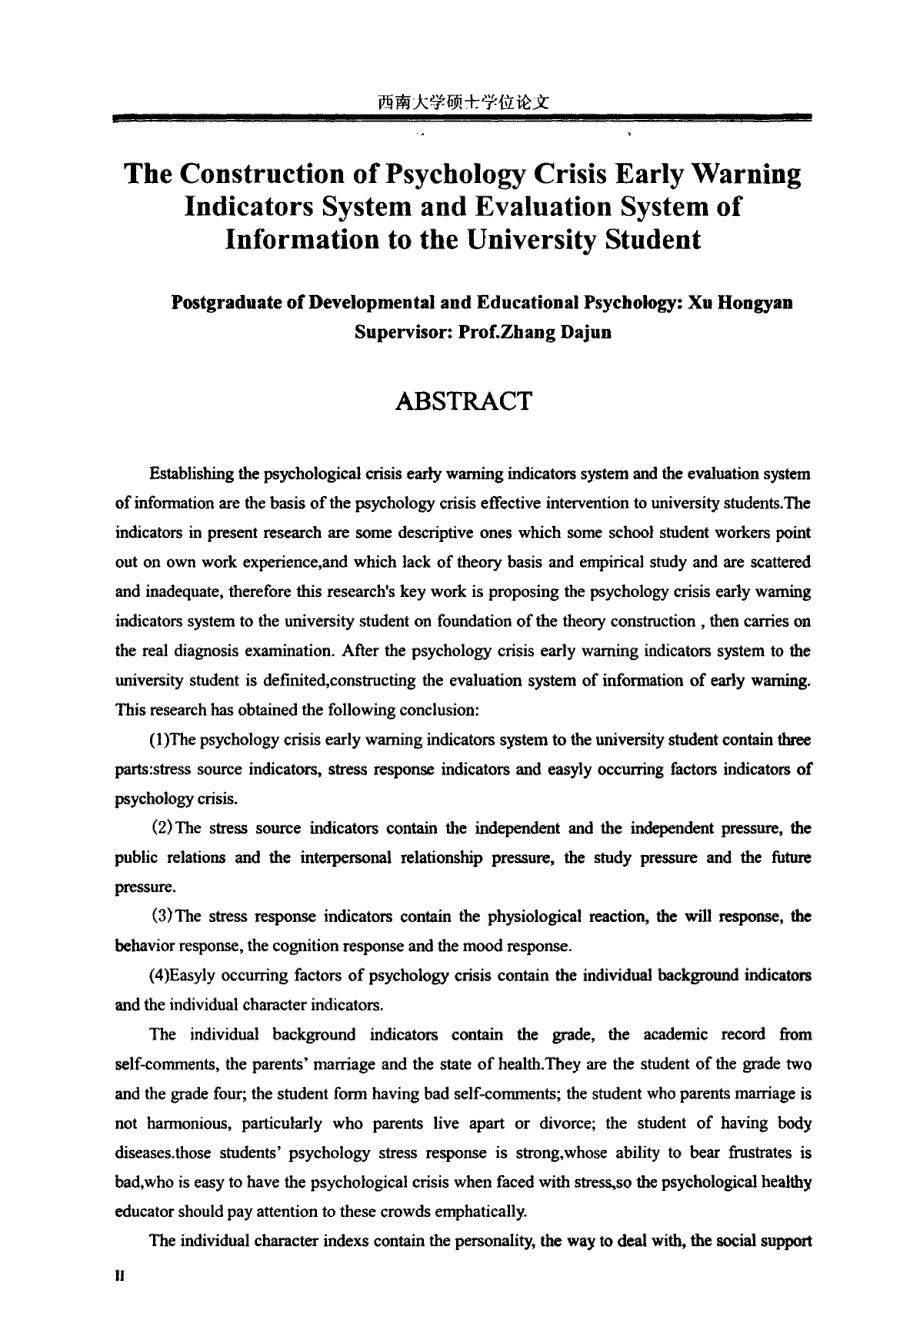 大学生心理危机预警指标体系及信息评估系统的建构_第3页